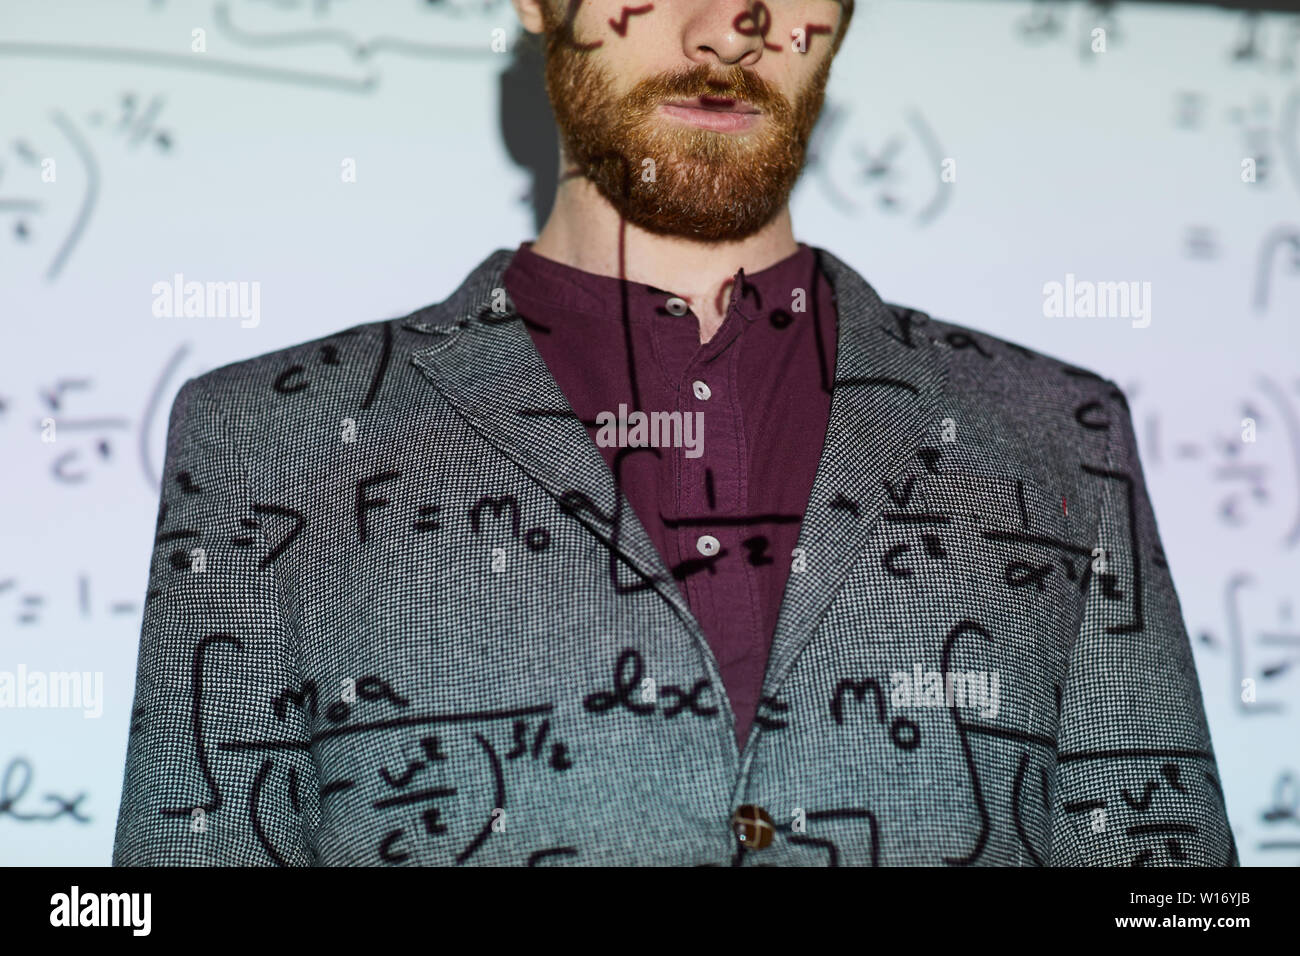 Homme barbu en veste gris debout contre l'écran de projection l'affichage des calculs mathématiques, copy space Banque D'Images